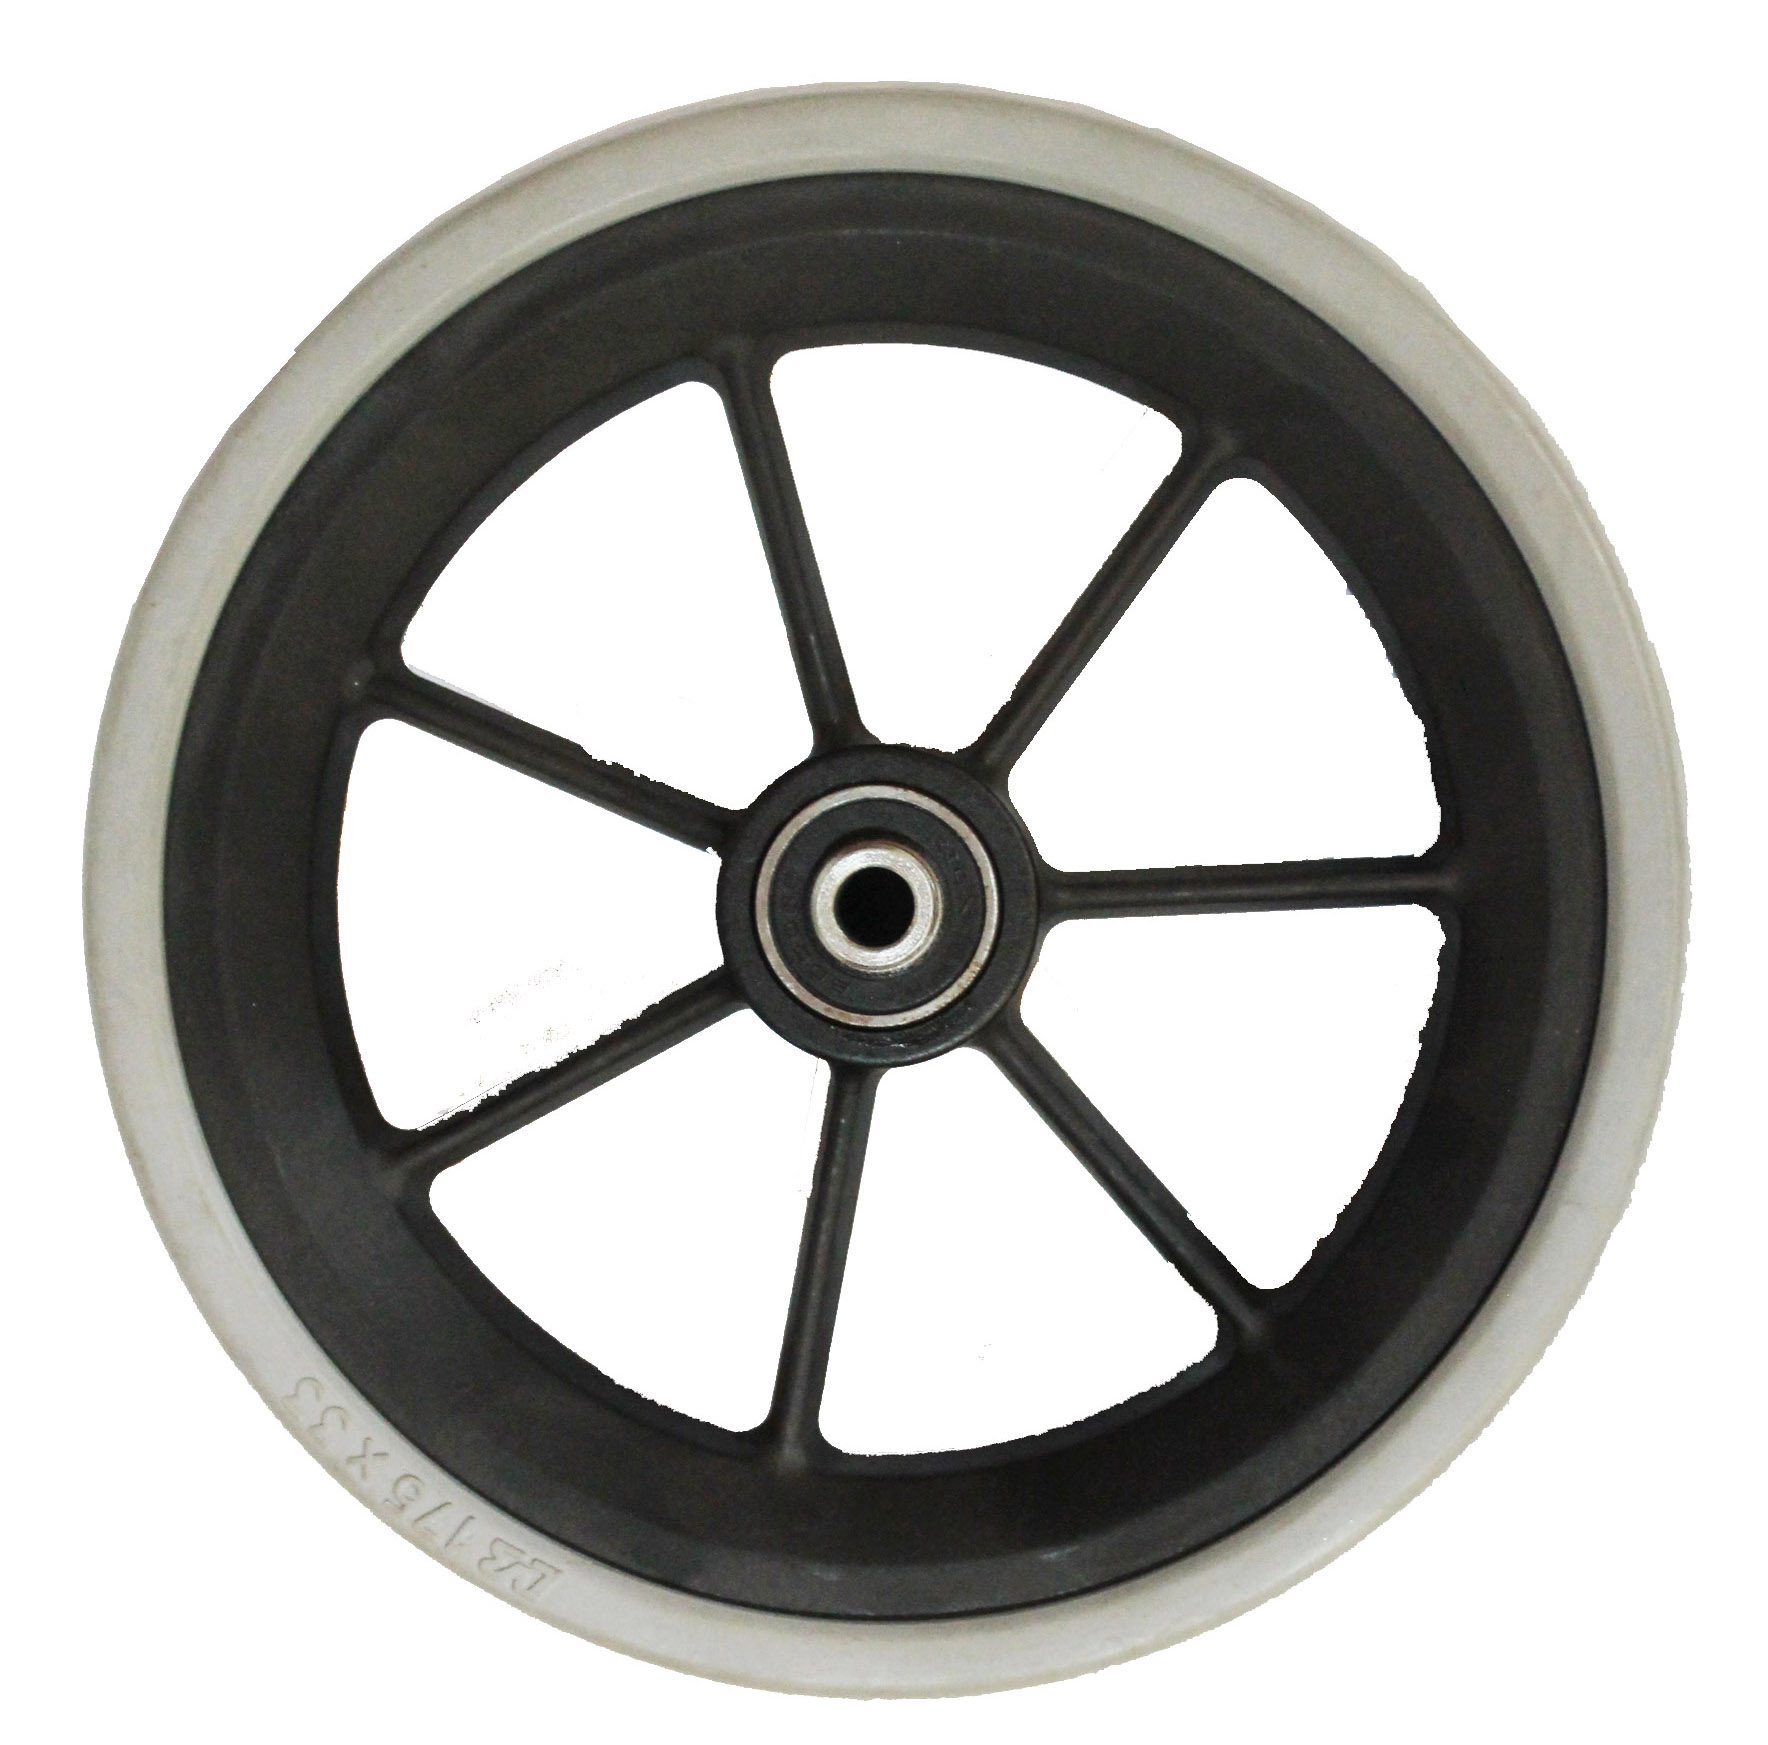 μικρό ρολό wheel.shower πλαστική πόρτα ρολό wheel.wheel roller.guide τροχού σιδηροτροχιάς ρολό